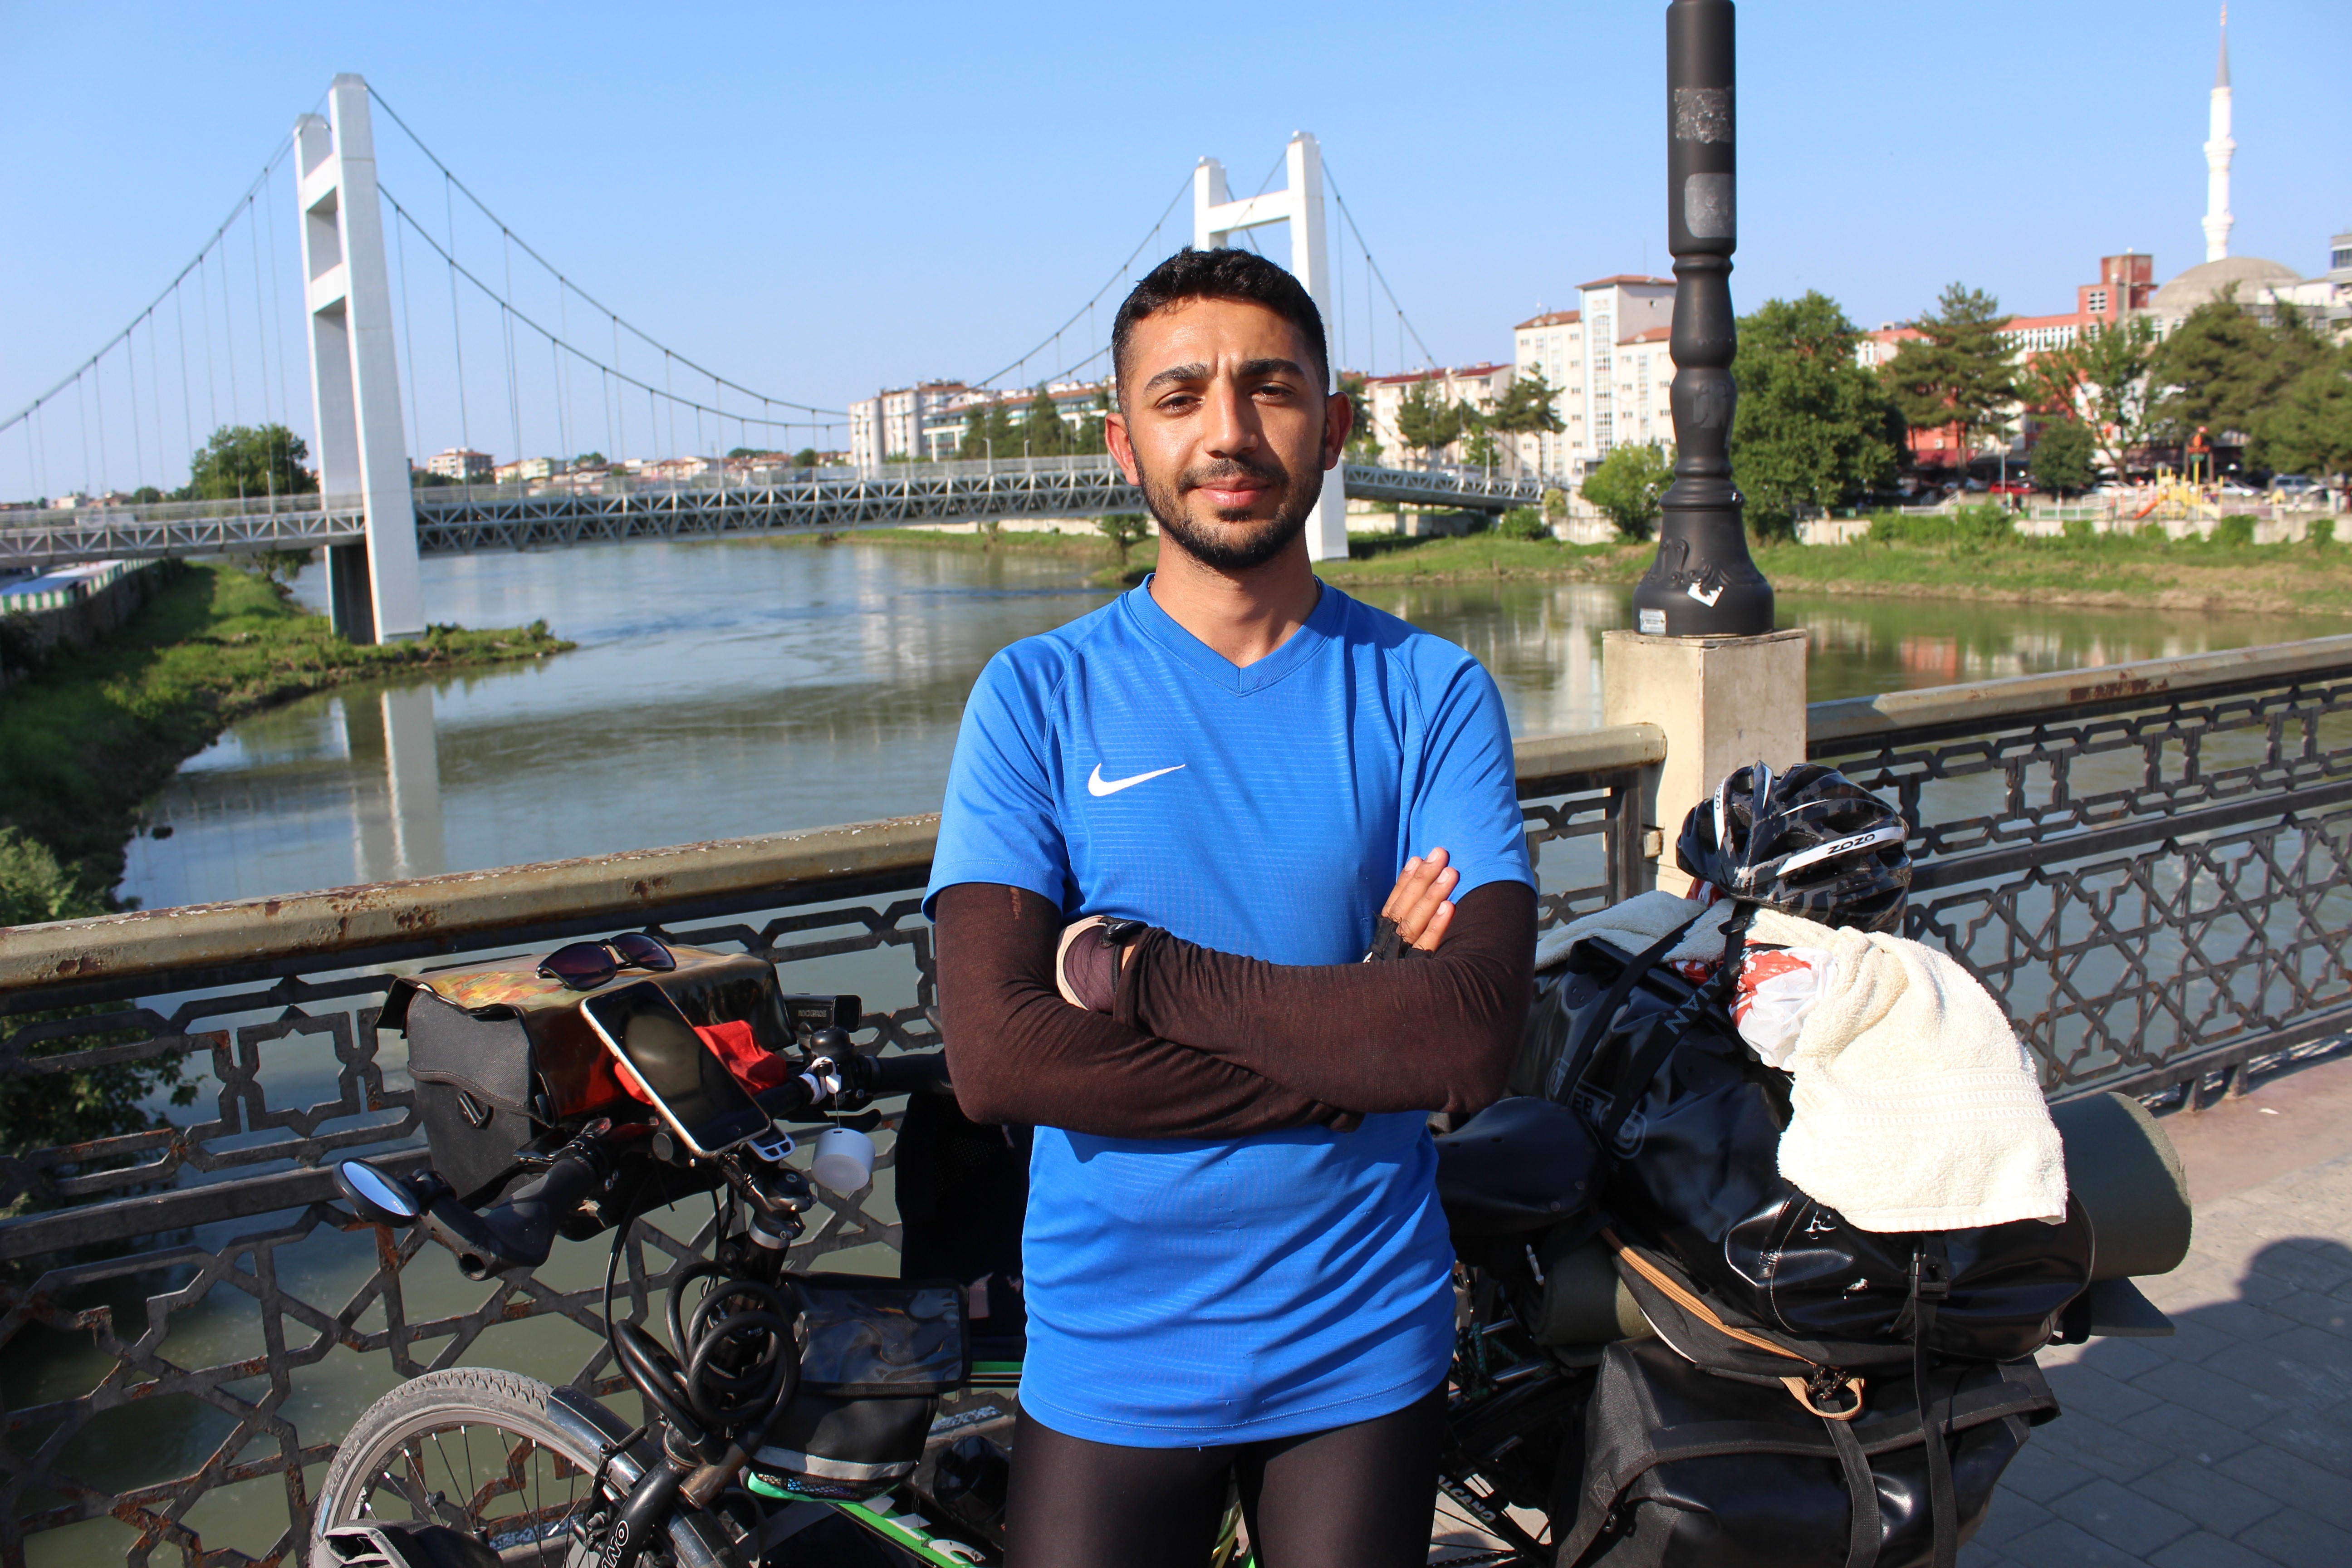 Üniversite öğrencisi genç bisikletiyle Karadeniz’i turluyor